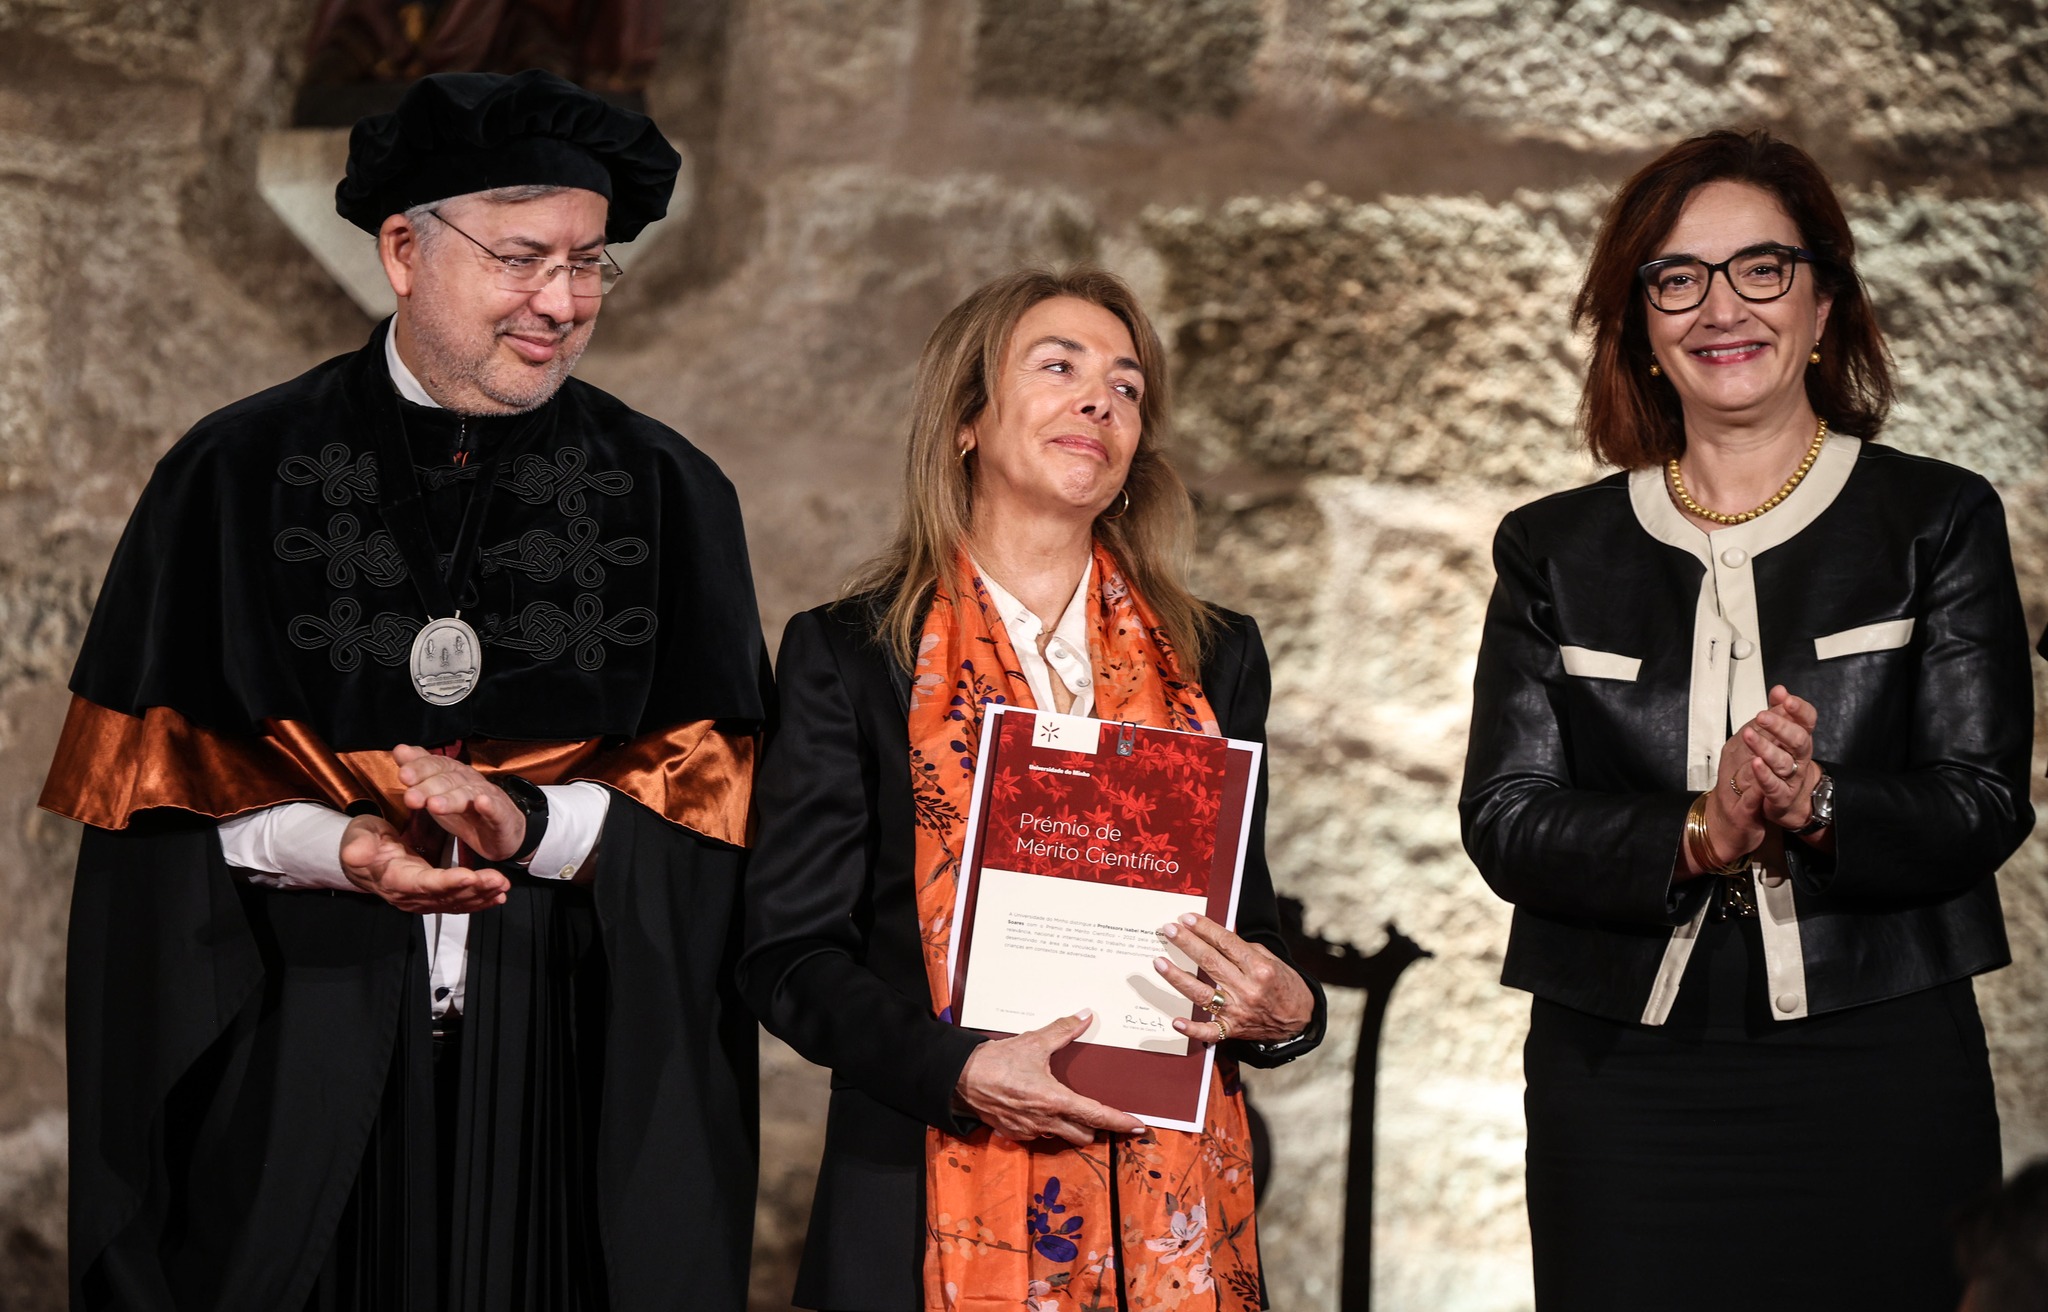 Cerimónia solene - Prémio de Mérito Científico para Isabel Soares (foto: Nuno Gonçalves)